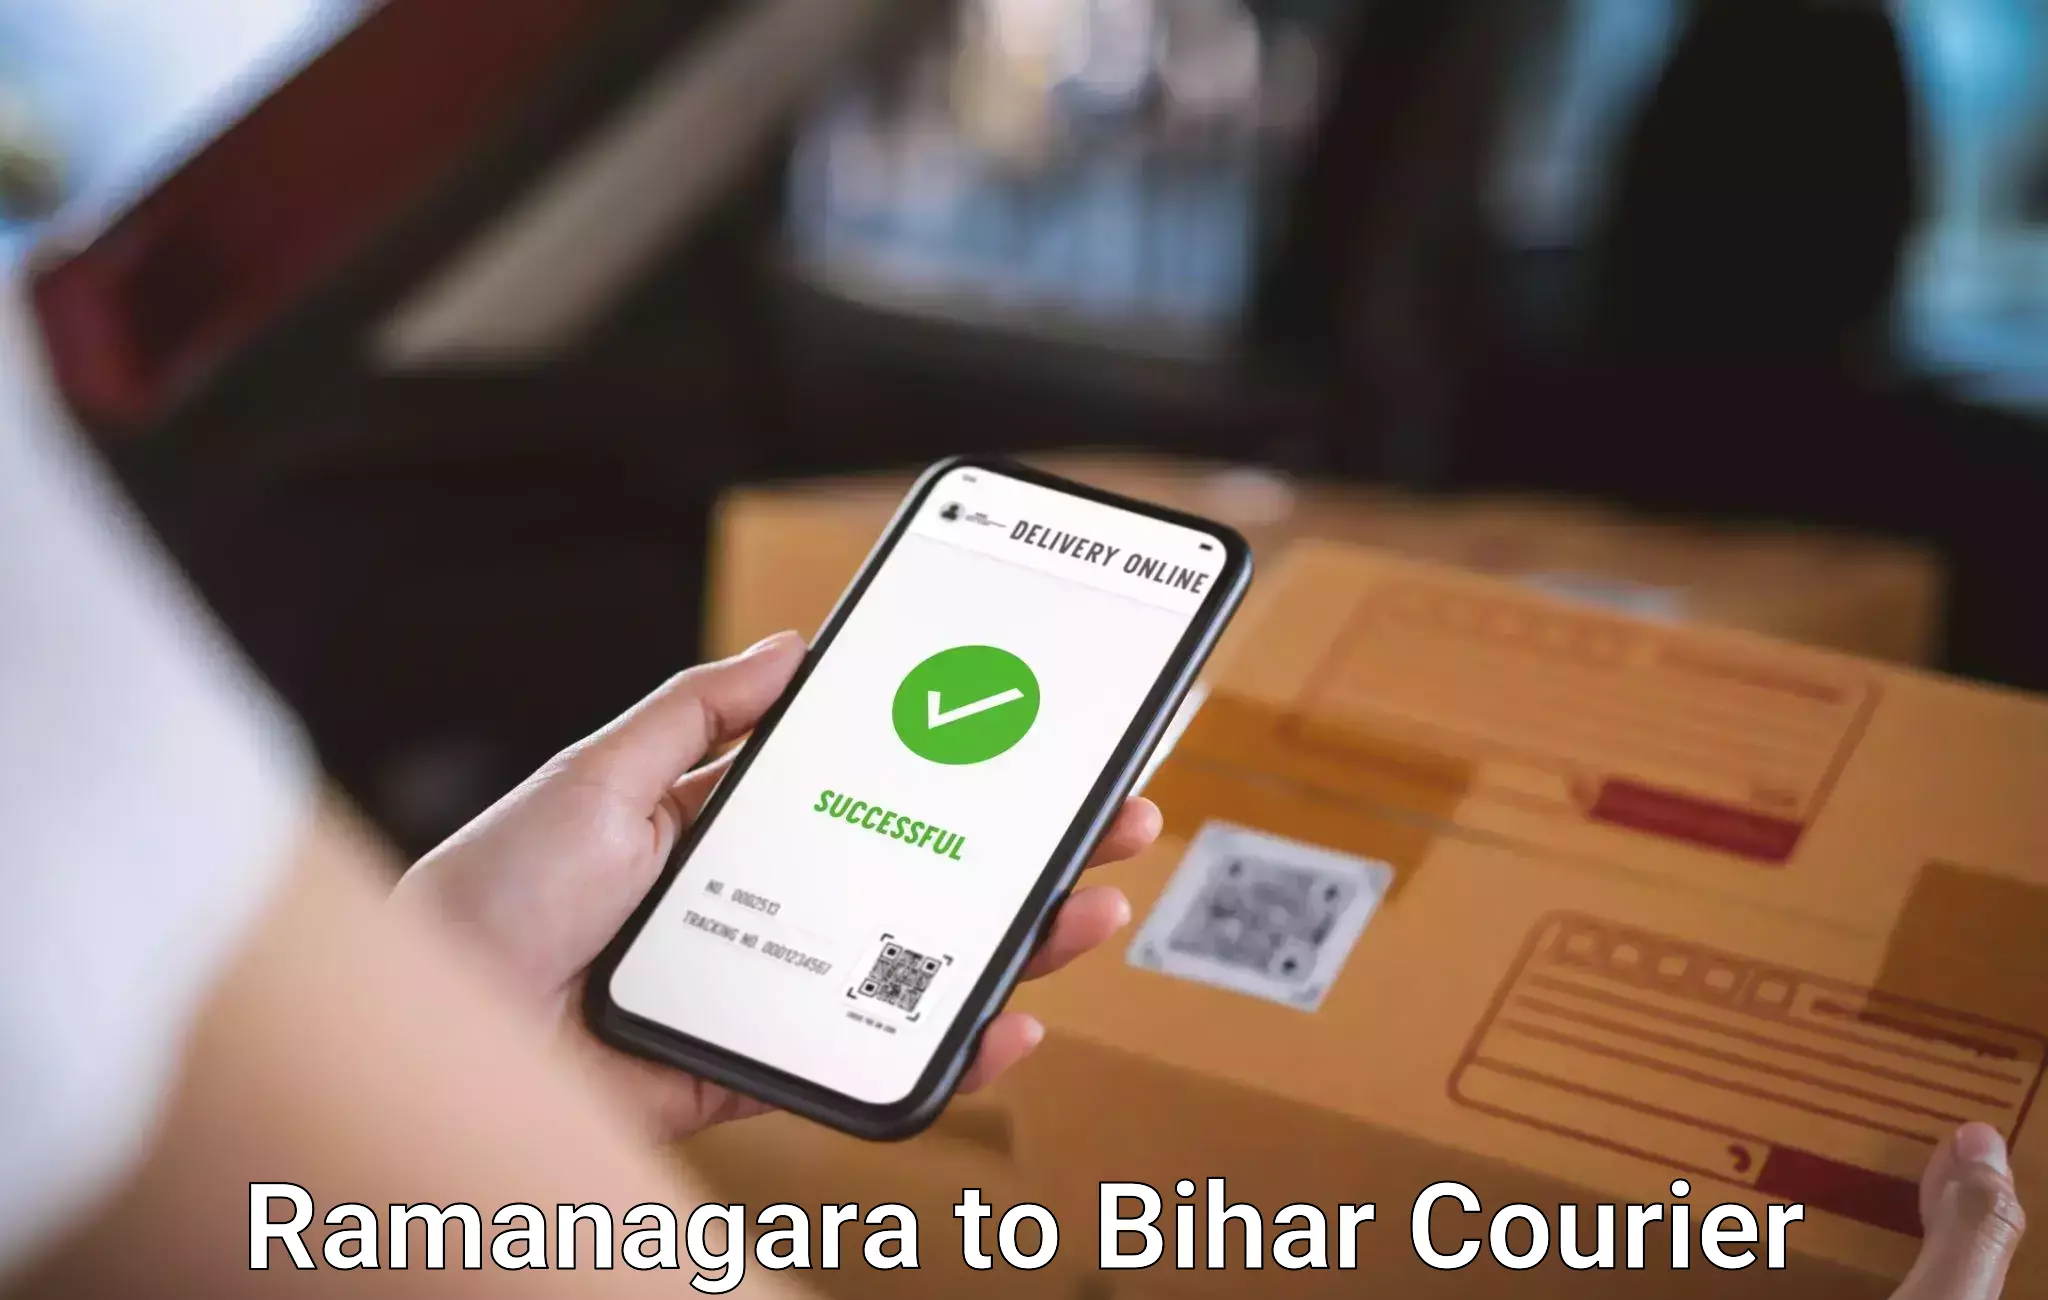 Baggage courier solutions Ramanagara to Vaishali